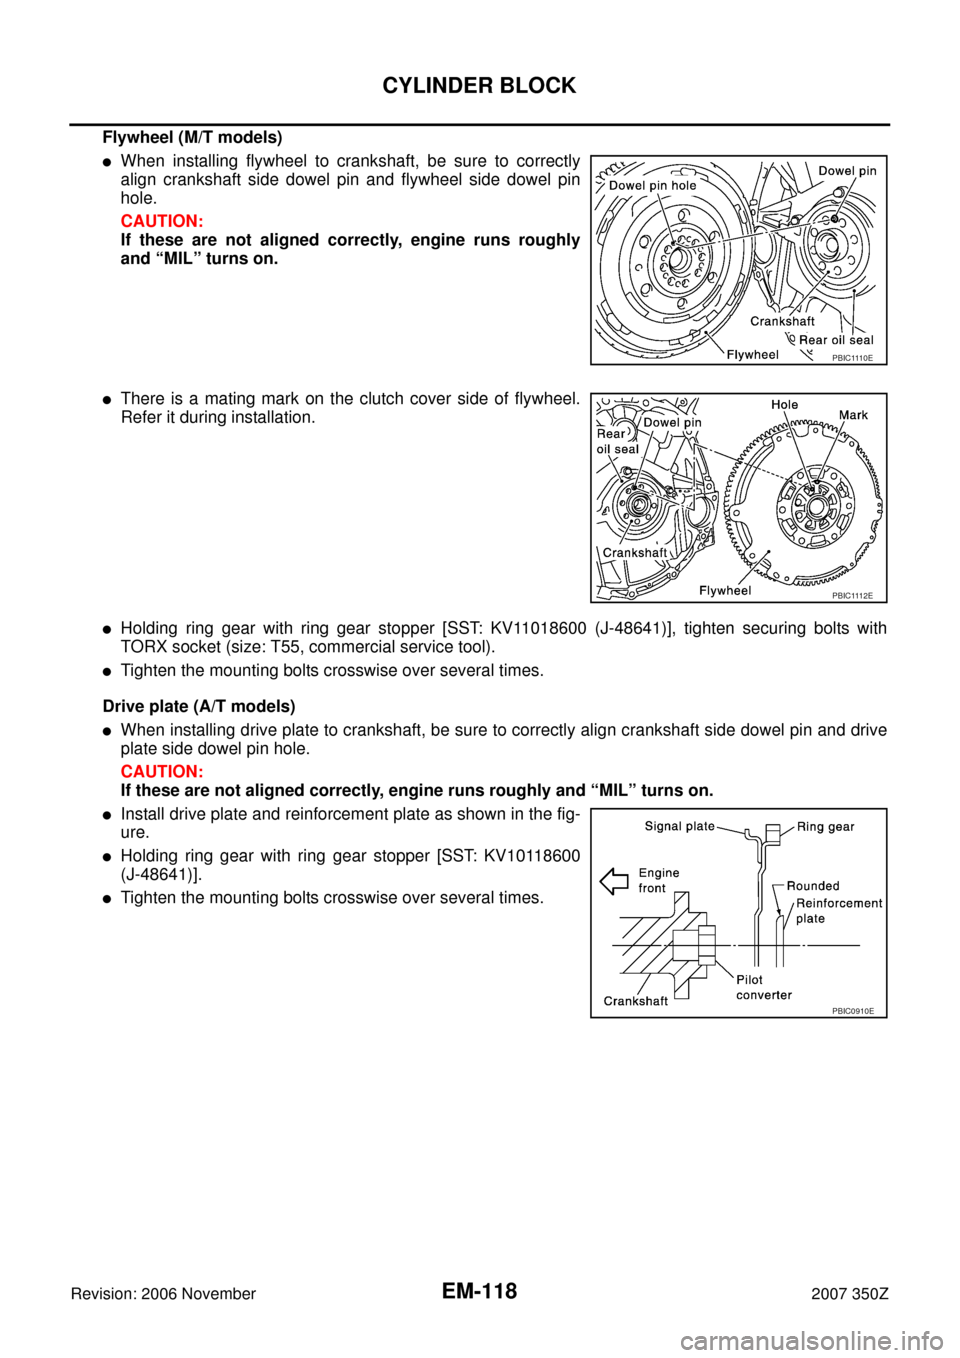 NISSAN 350Z 2007 Z33 Engine Mechanical Workshop Manual EM-118
CYLINDER BLOCK
Revision: 2006 November2007 350Z
Flywheel (M/T models)
When installing flywheel to crankshaft, be sure to correctly
align crankshaft side dowel pin and flywheel side dowel pin
h